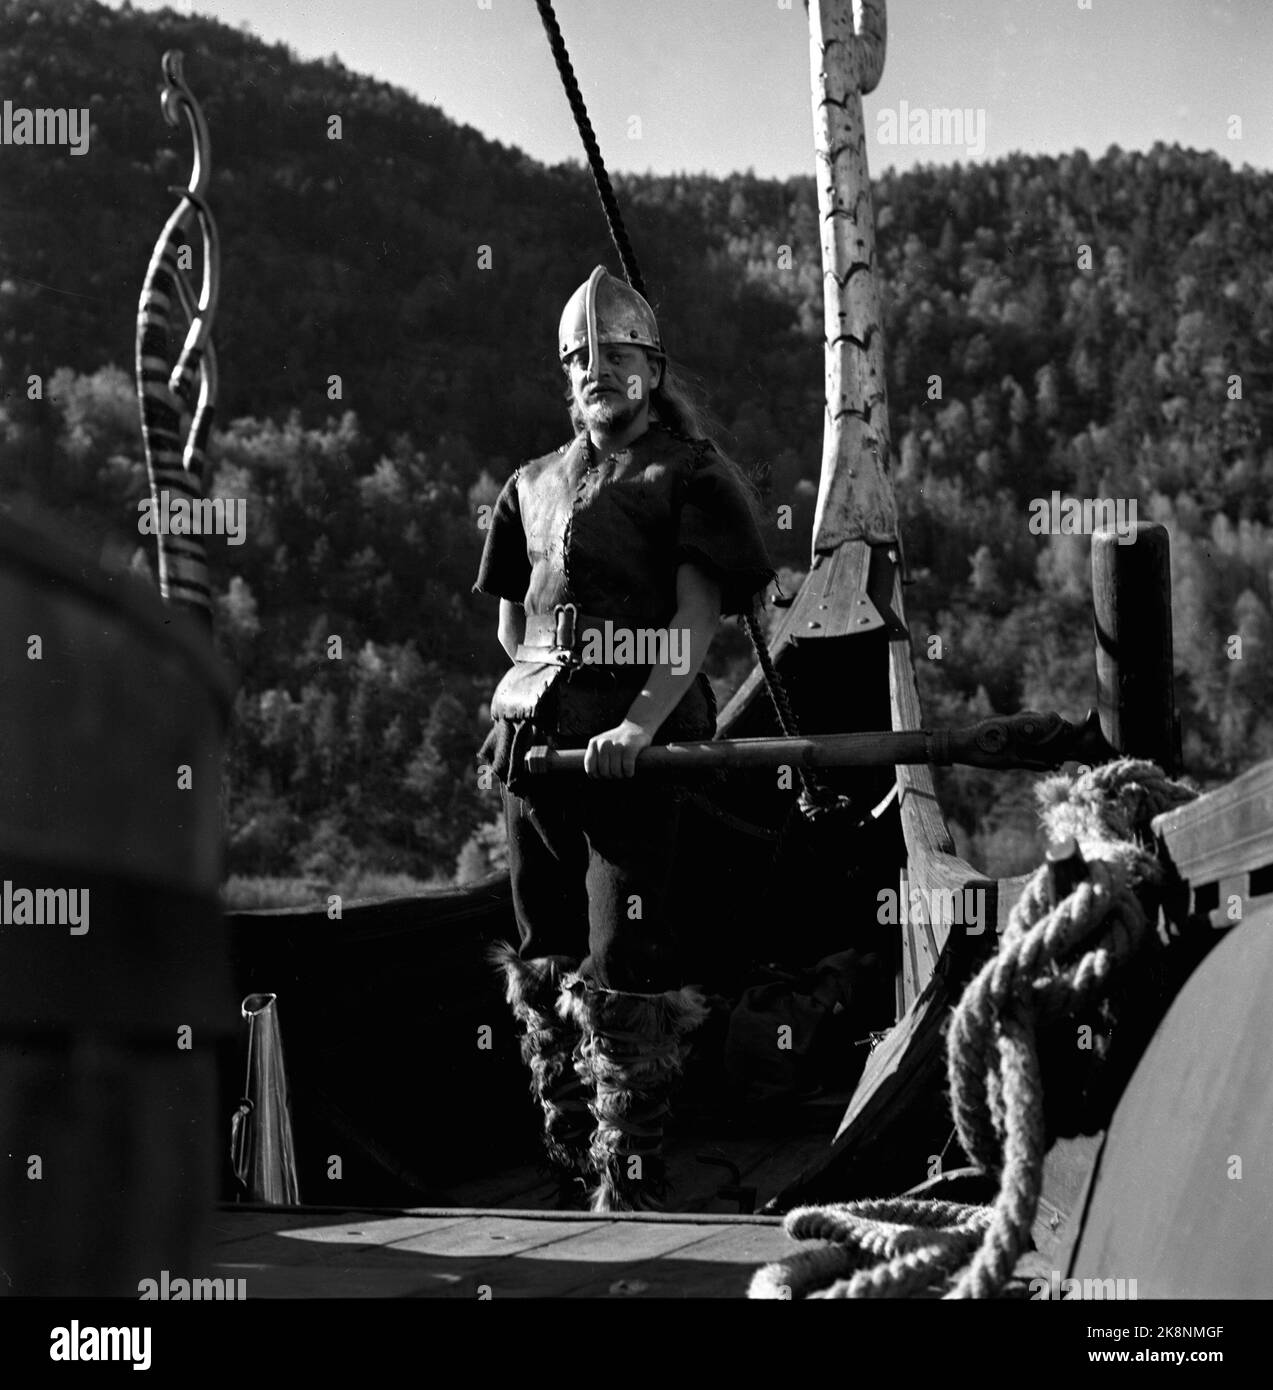 Oslo, 195705. La registrazione del film i Vichinghi (Vichinghi) sotto gli auspici di Richard Fleisscher. Ecco un testardo 'vichingo' nella poppa della 'nave vichinga'. Foto: Jan Stage / NTB Foto Stock